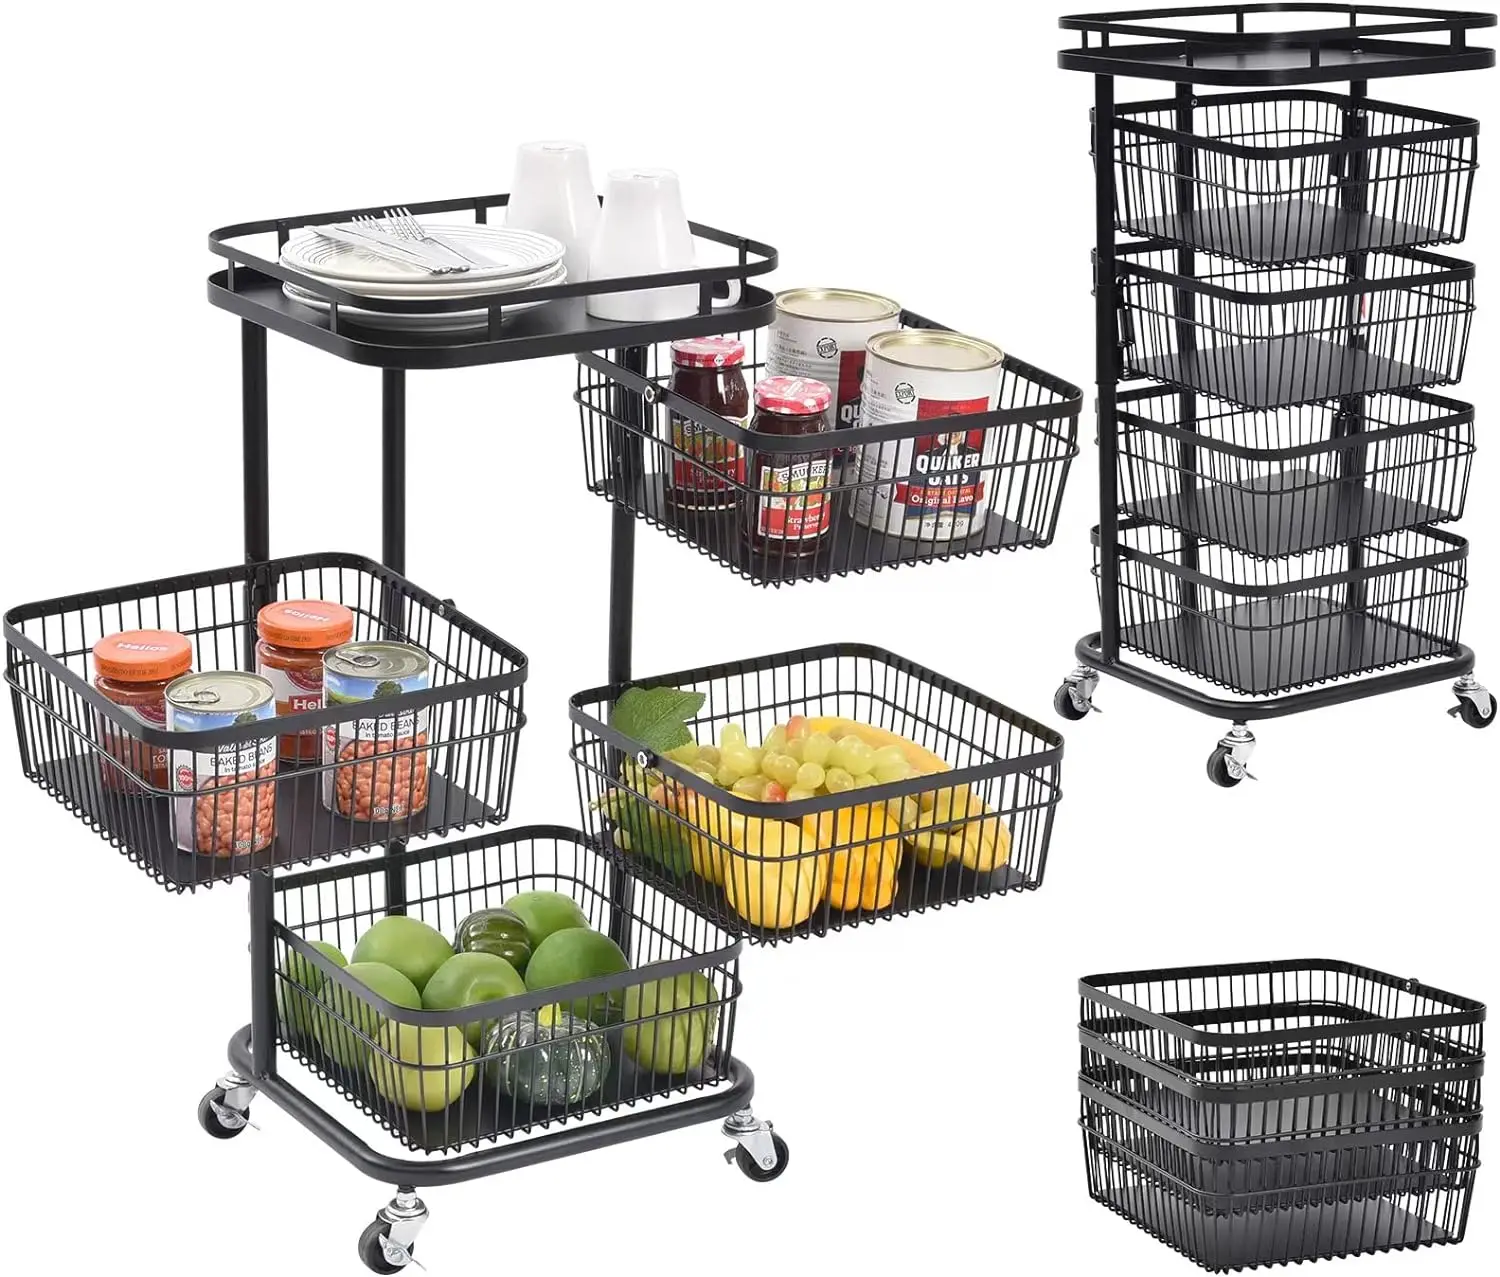 

Кухонная башня для хранения, квадратная корзина, полки, органайзер на колесиках со съемными ящиками для фруктов, овощей, продуктов